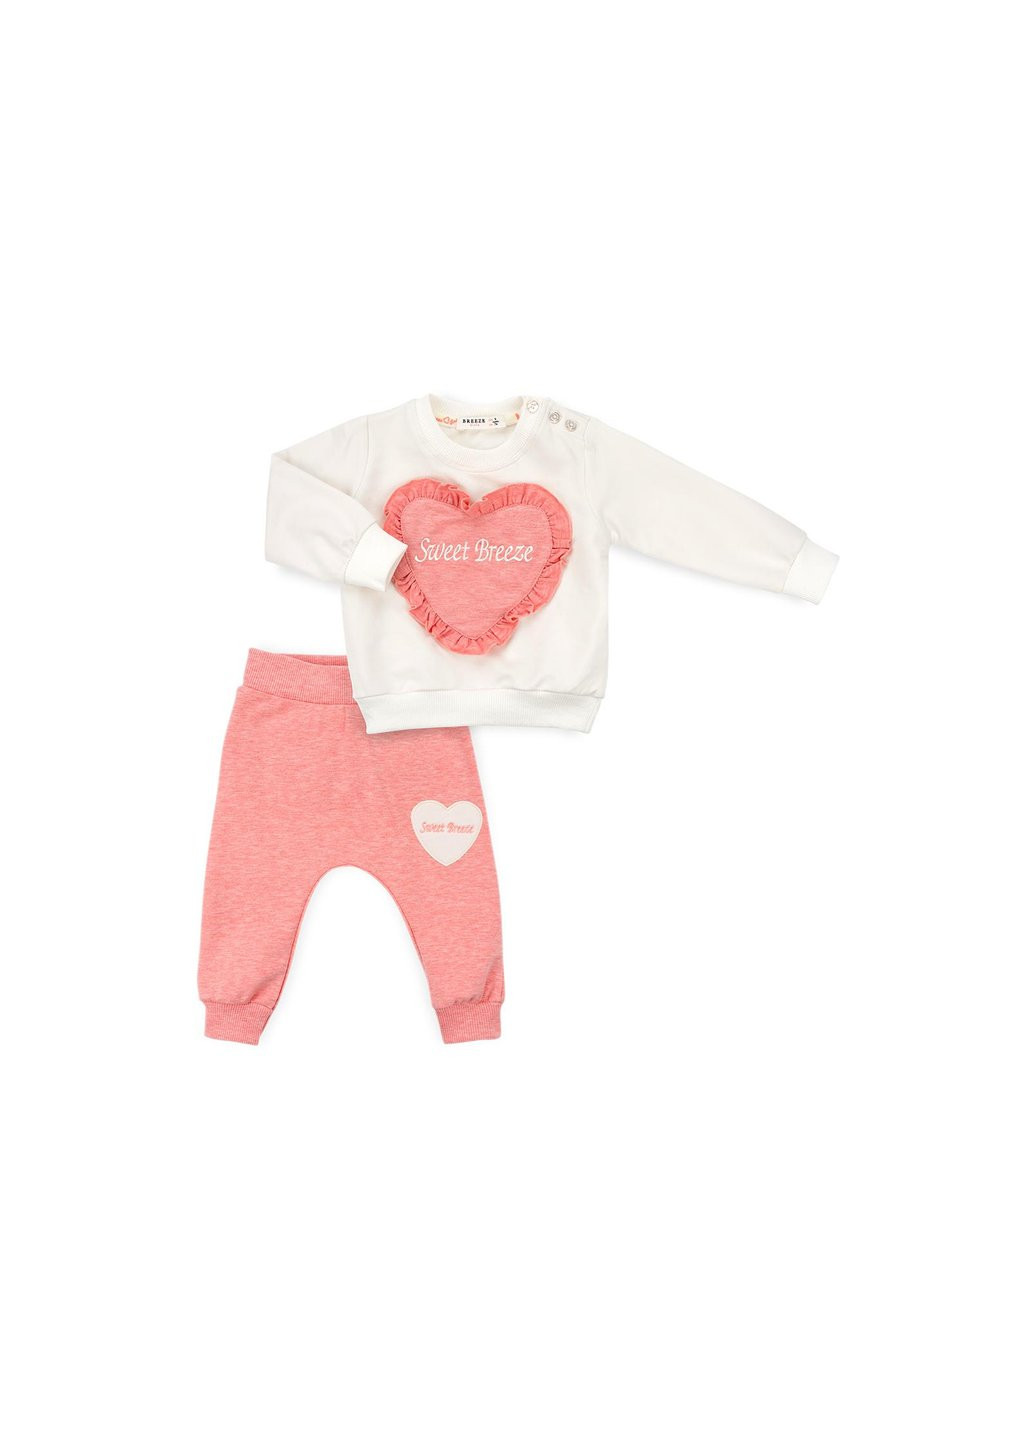 Комбинированный демисезонный набор детской одежды с сердечком и оборочкой (11261-80g-peach) Breeze